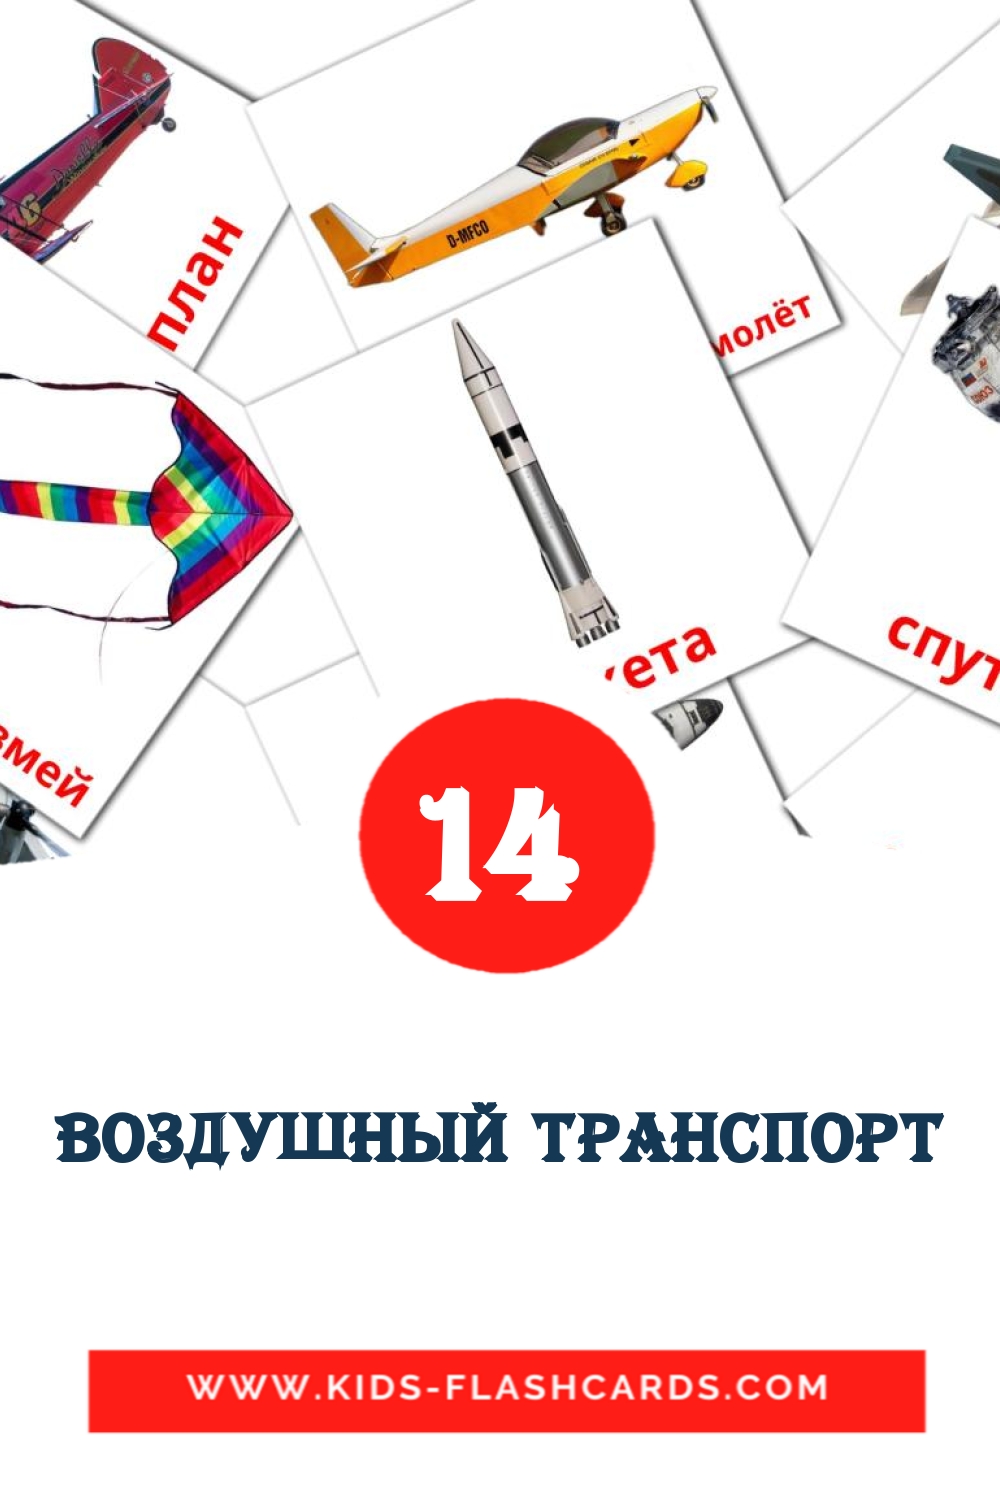 14 tarjetas didacticas de Воздушный транспорт para el jardín de infancia en ruso